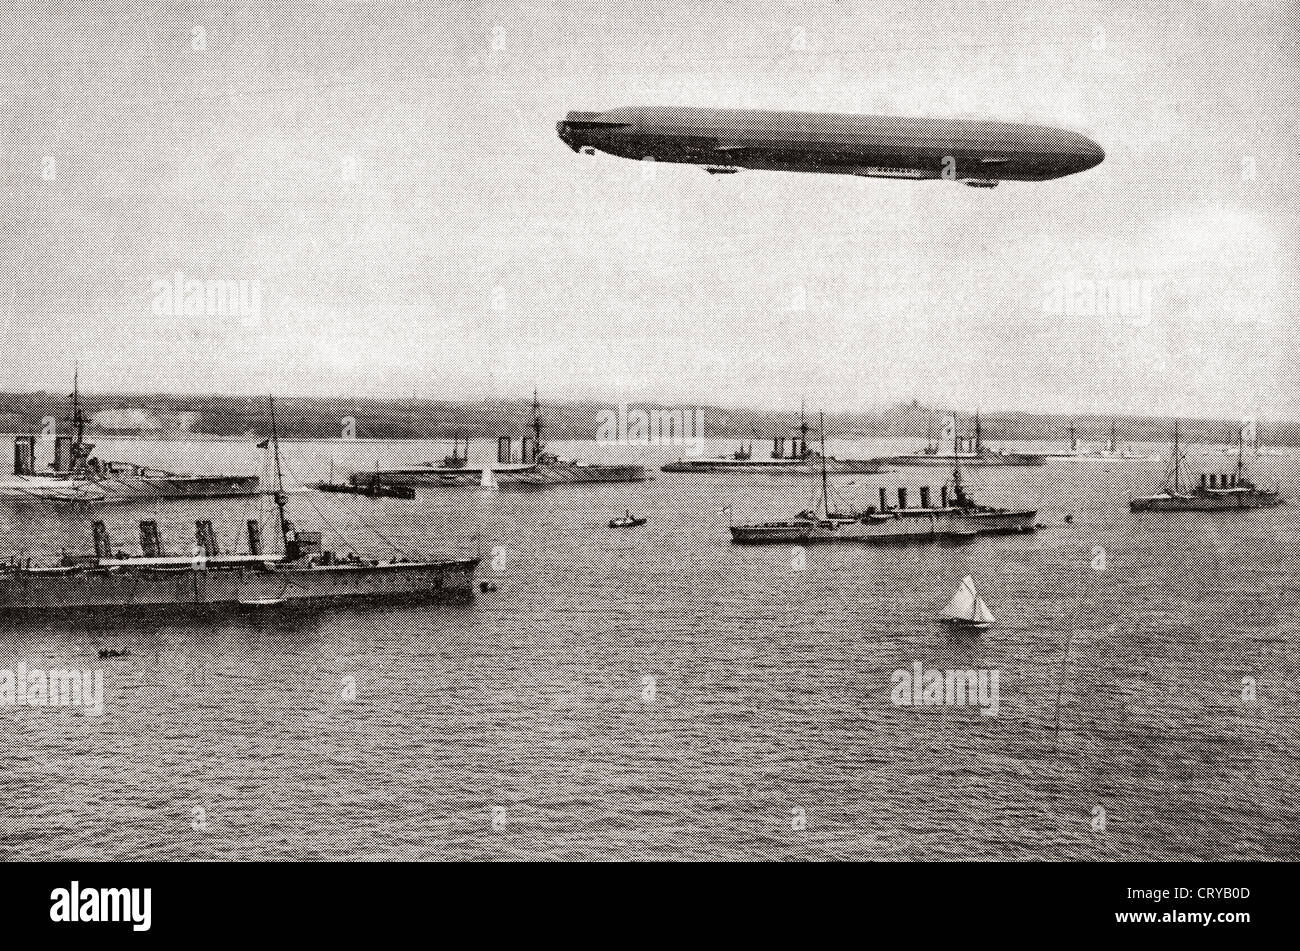 Zeppelin sobre buques de guerra, en el canal de Kiel, Alemania durante la I Guerra Mundial desde el año 1914 ilustra. Foto de stock